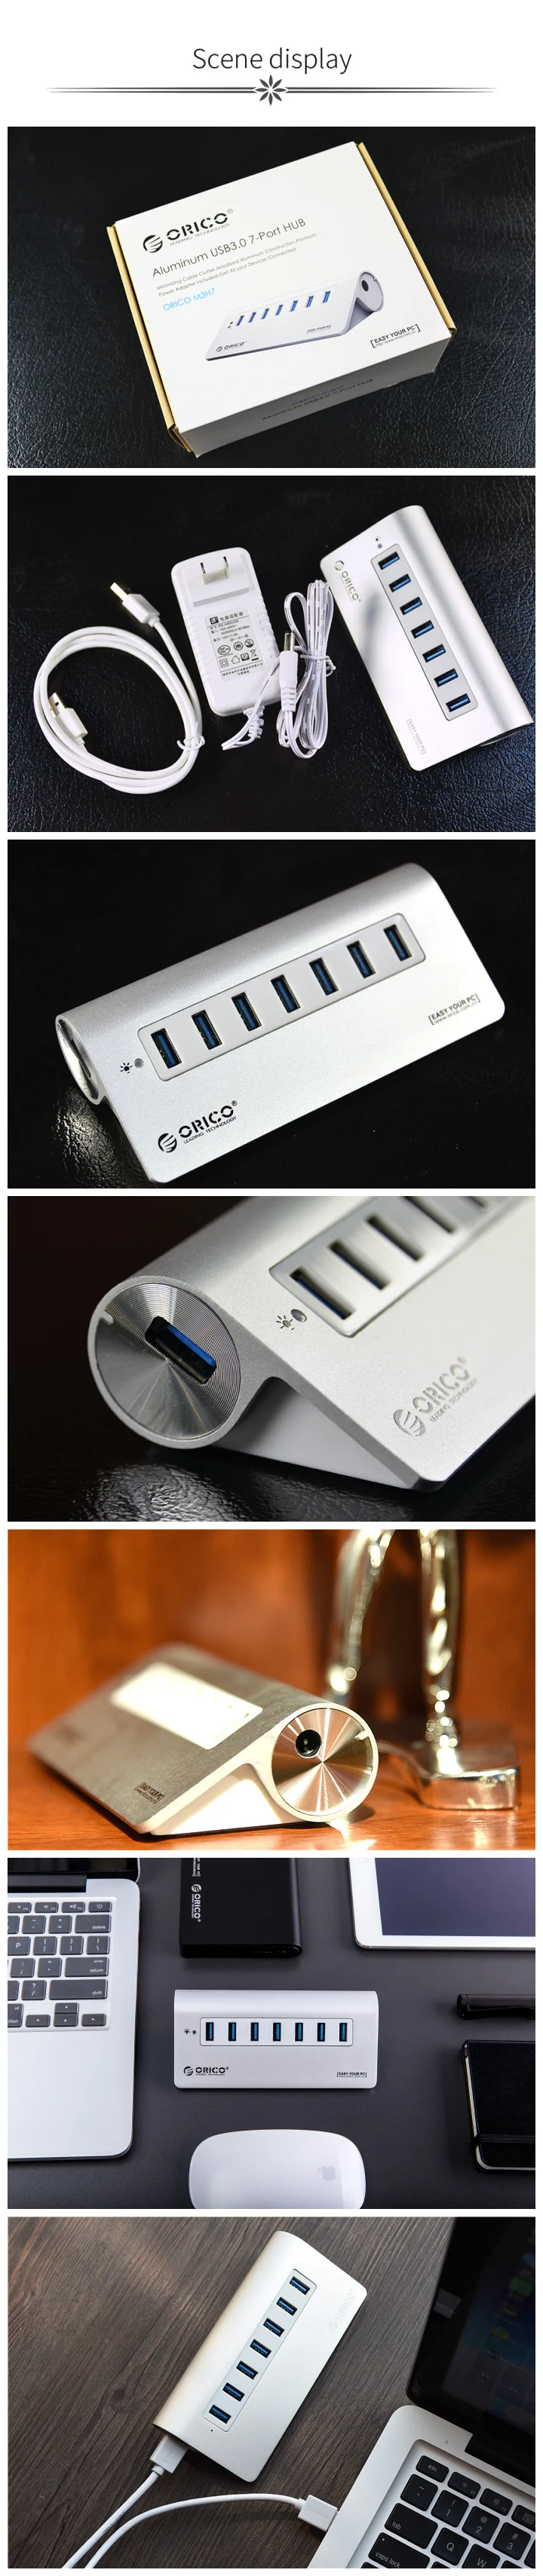 ORICO концентратор USB 3,0 Алюминий 7 Порты и разъёмы супер Скорость концентратор, украшенное мозаикой из драгоценных камней, 12V Мощность адаптер 3.3Ft. Кабель USB3.0 для ноутбука iMac MacBook